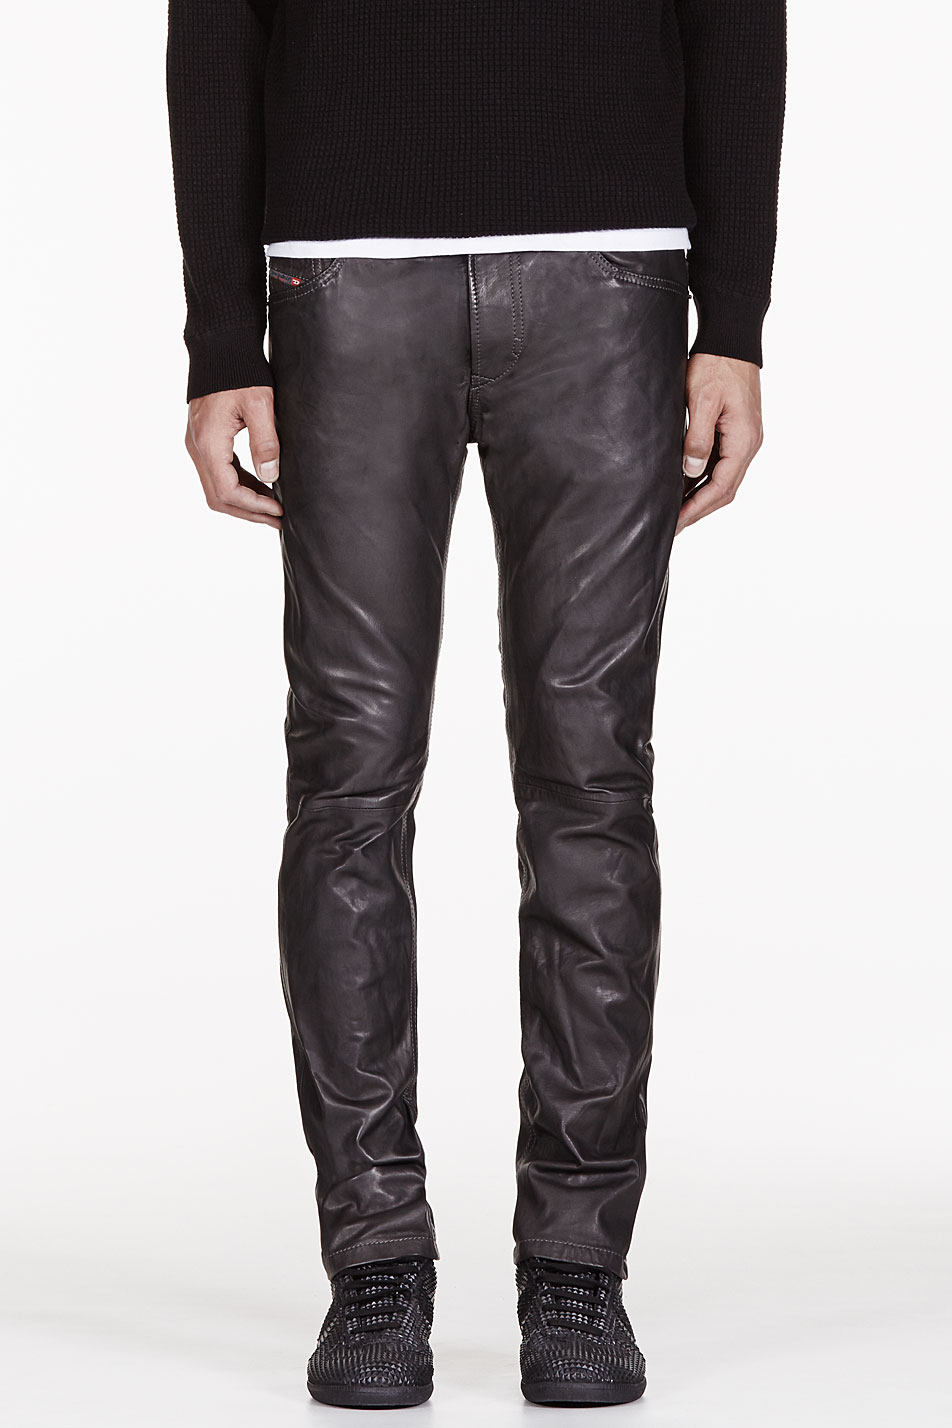 Lyst - DIESEL Black Wrinkle Leather L Thavar Trouser in Black for Men